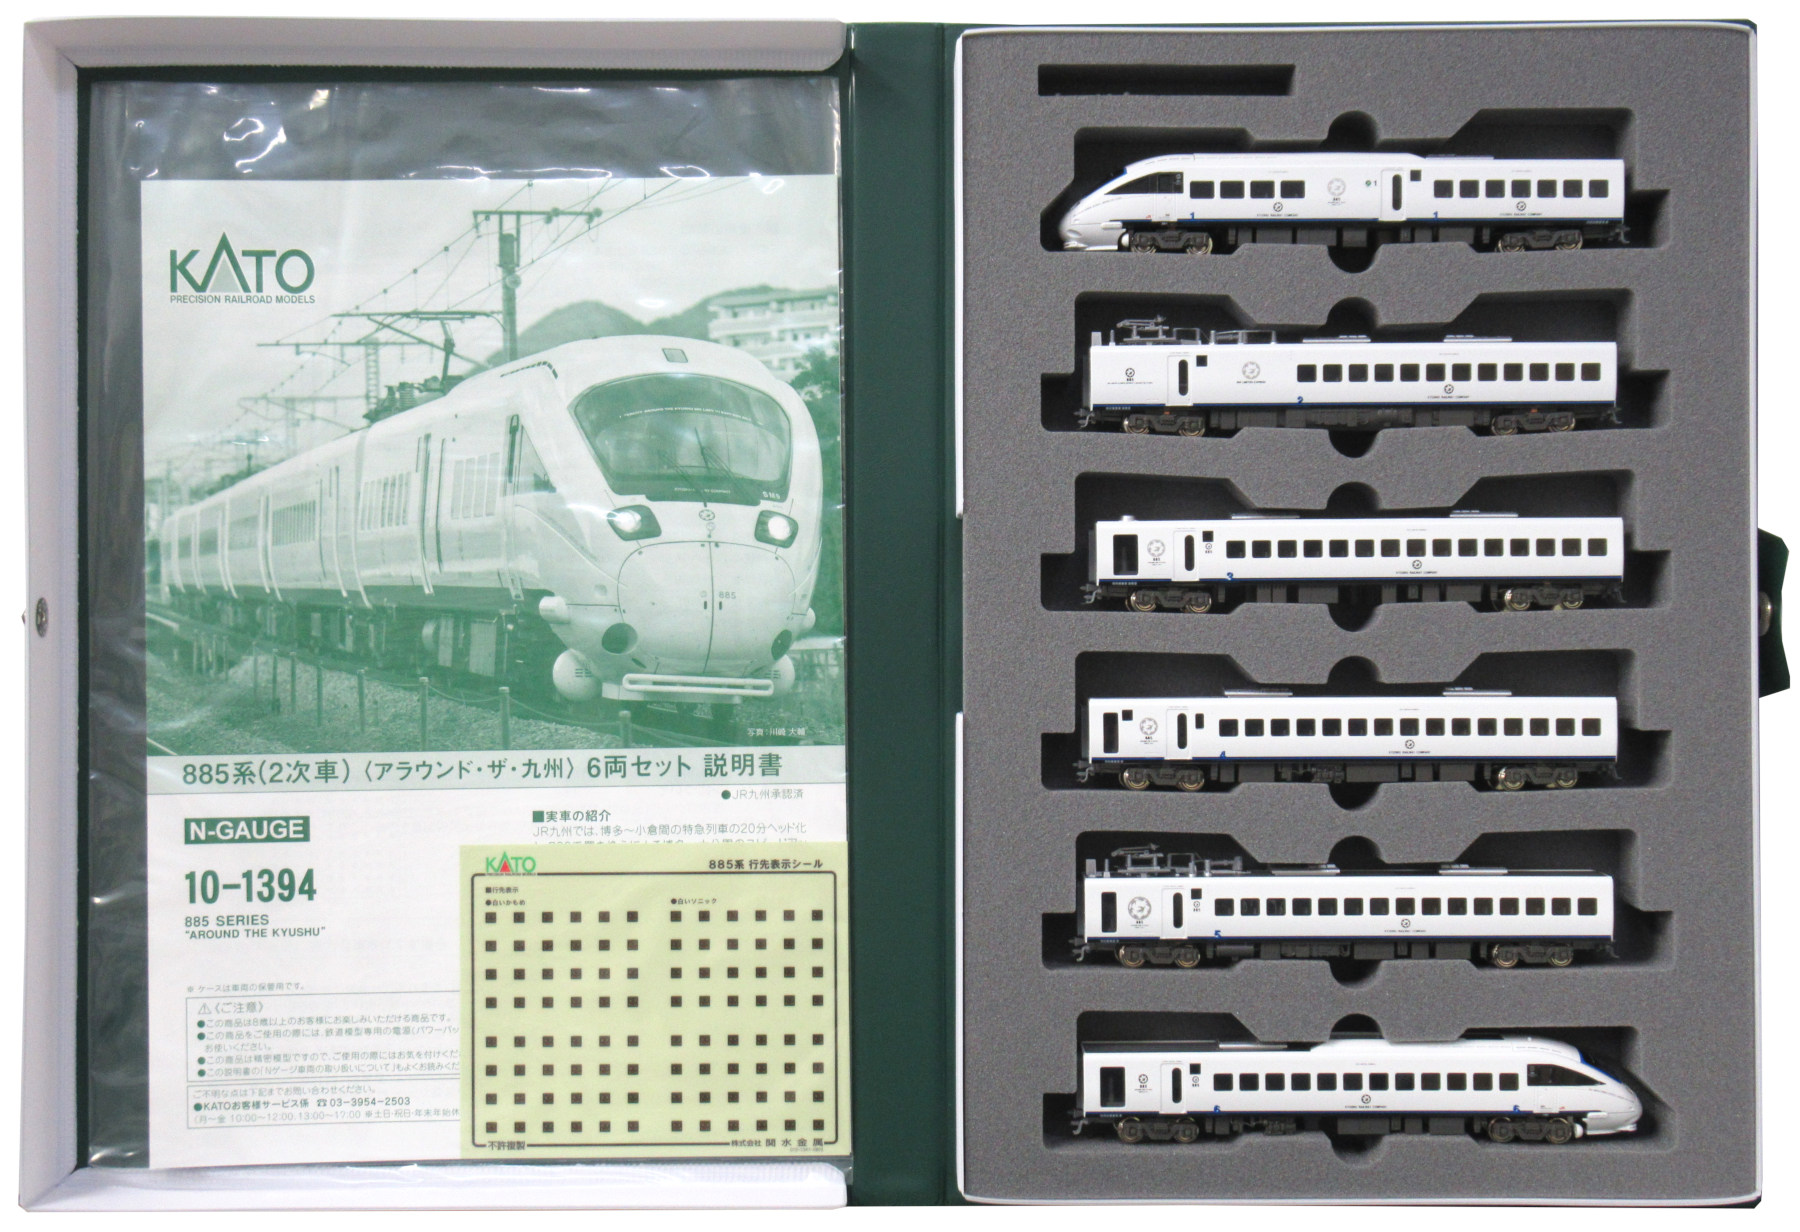 公式]鉄道模型(10-1394885系 (2次車)「アラウンド・ザ・九州」6両